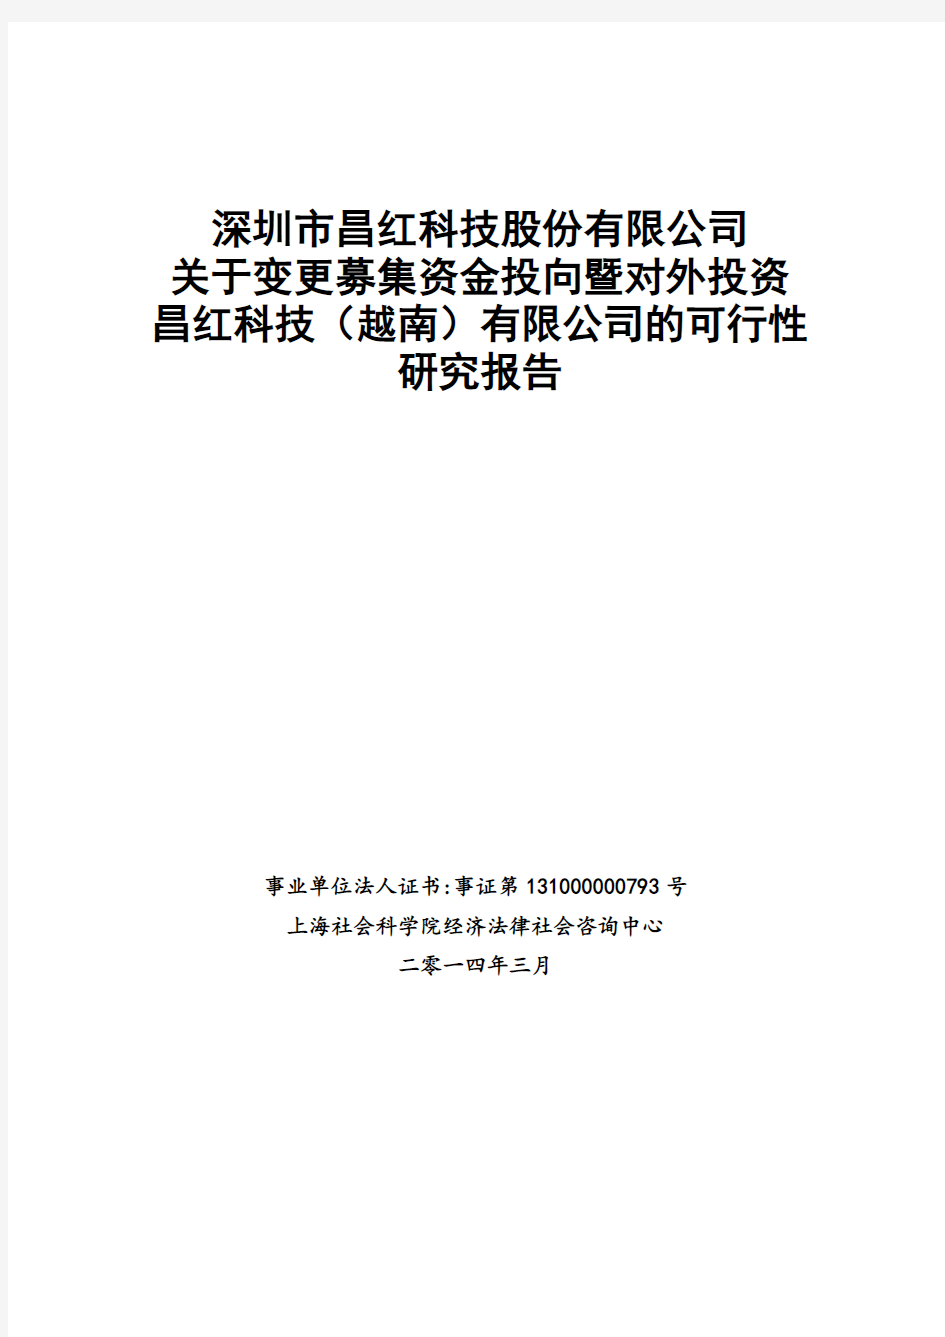 关于投资昌红科技(越南)有限公司的可行性研究报告